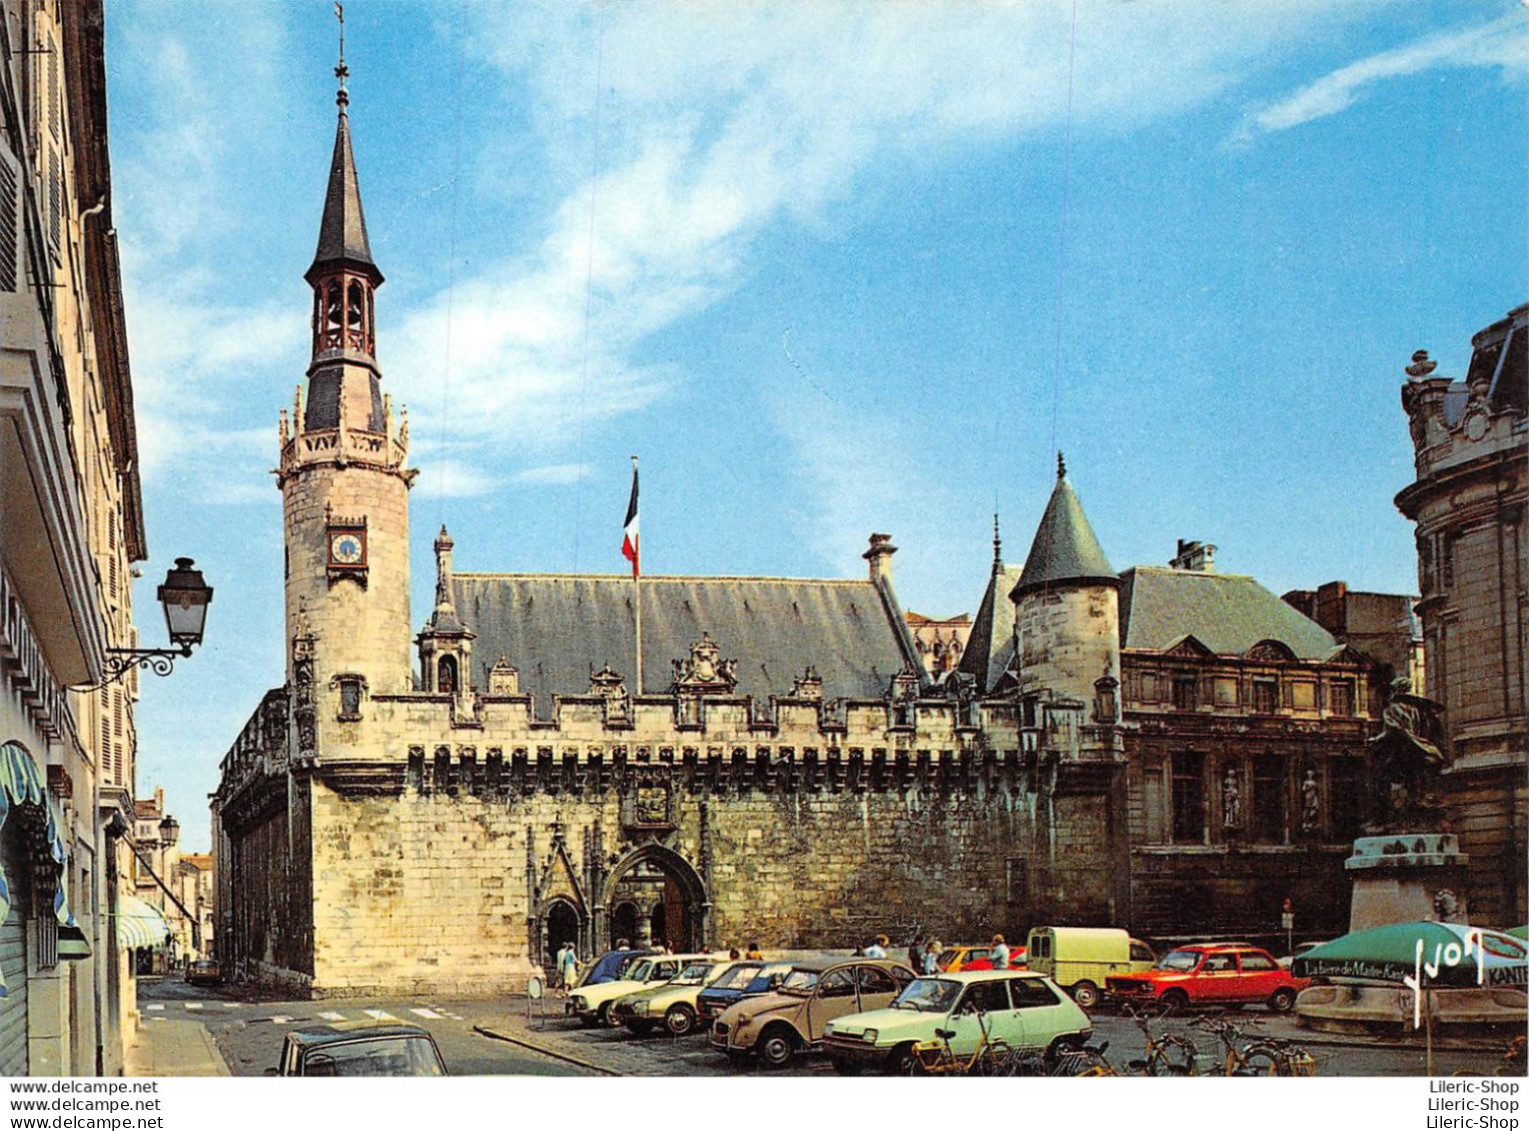 [17] La Rochelle - L'Hôtel De Ville - R5, 2 CV, BMW Cpm GF 1984 - Voitures De Tourisme